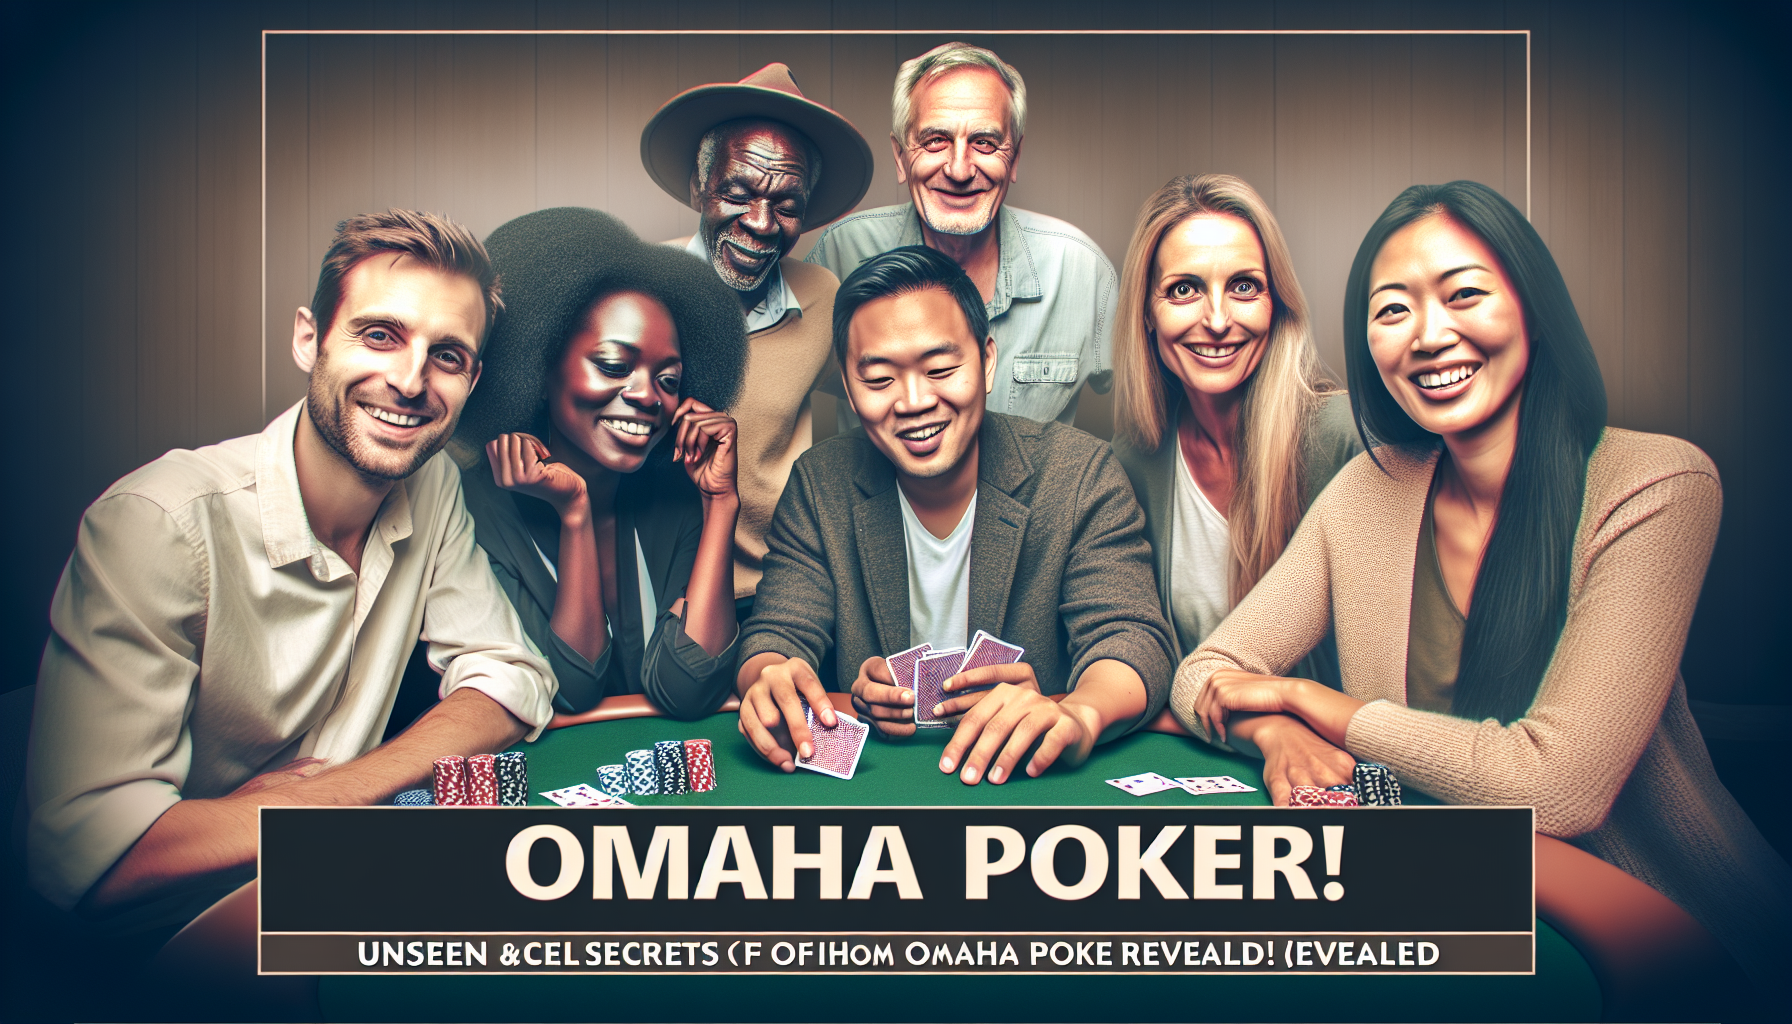 découvrez le poker omaha, une variante passionnante du célèbre jeu de cartes, ses règles, ses particularités et ses stratégies sur notre site. jouez au poker omaha et affrontez d'autres joueurs dans des parties palpitantes.